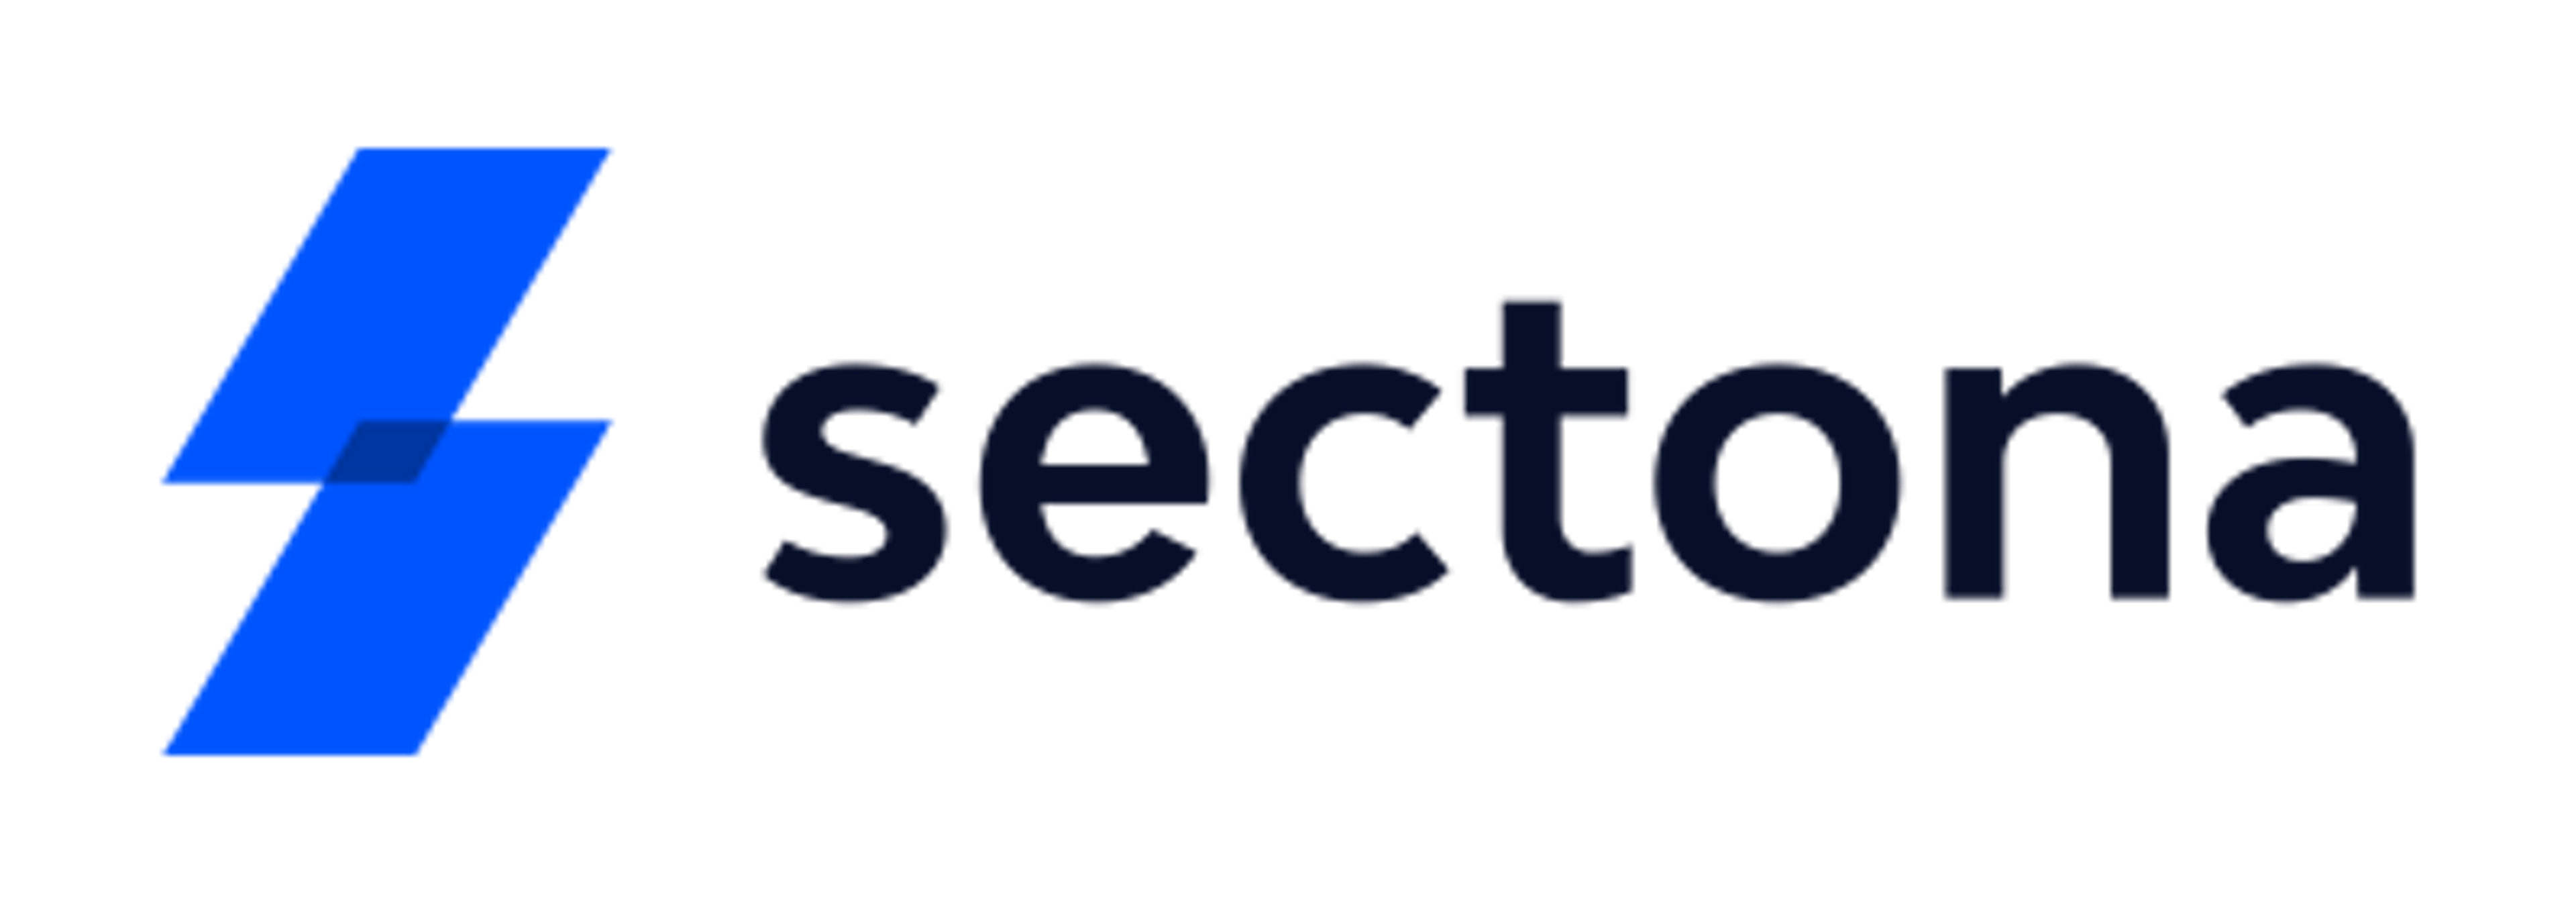 Sectona Security Platform Logo